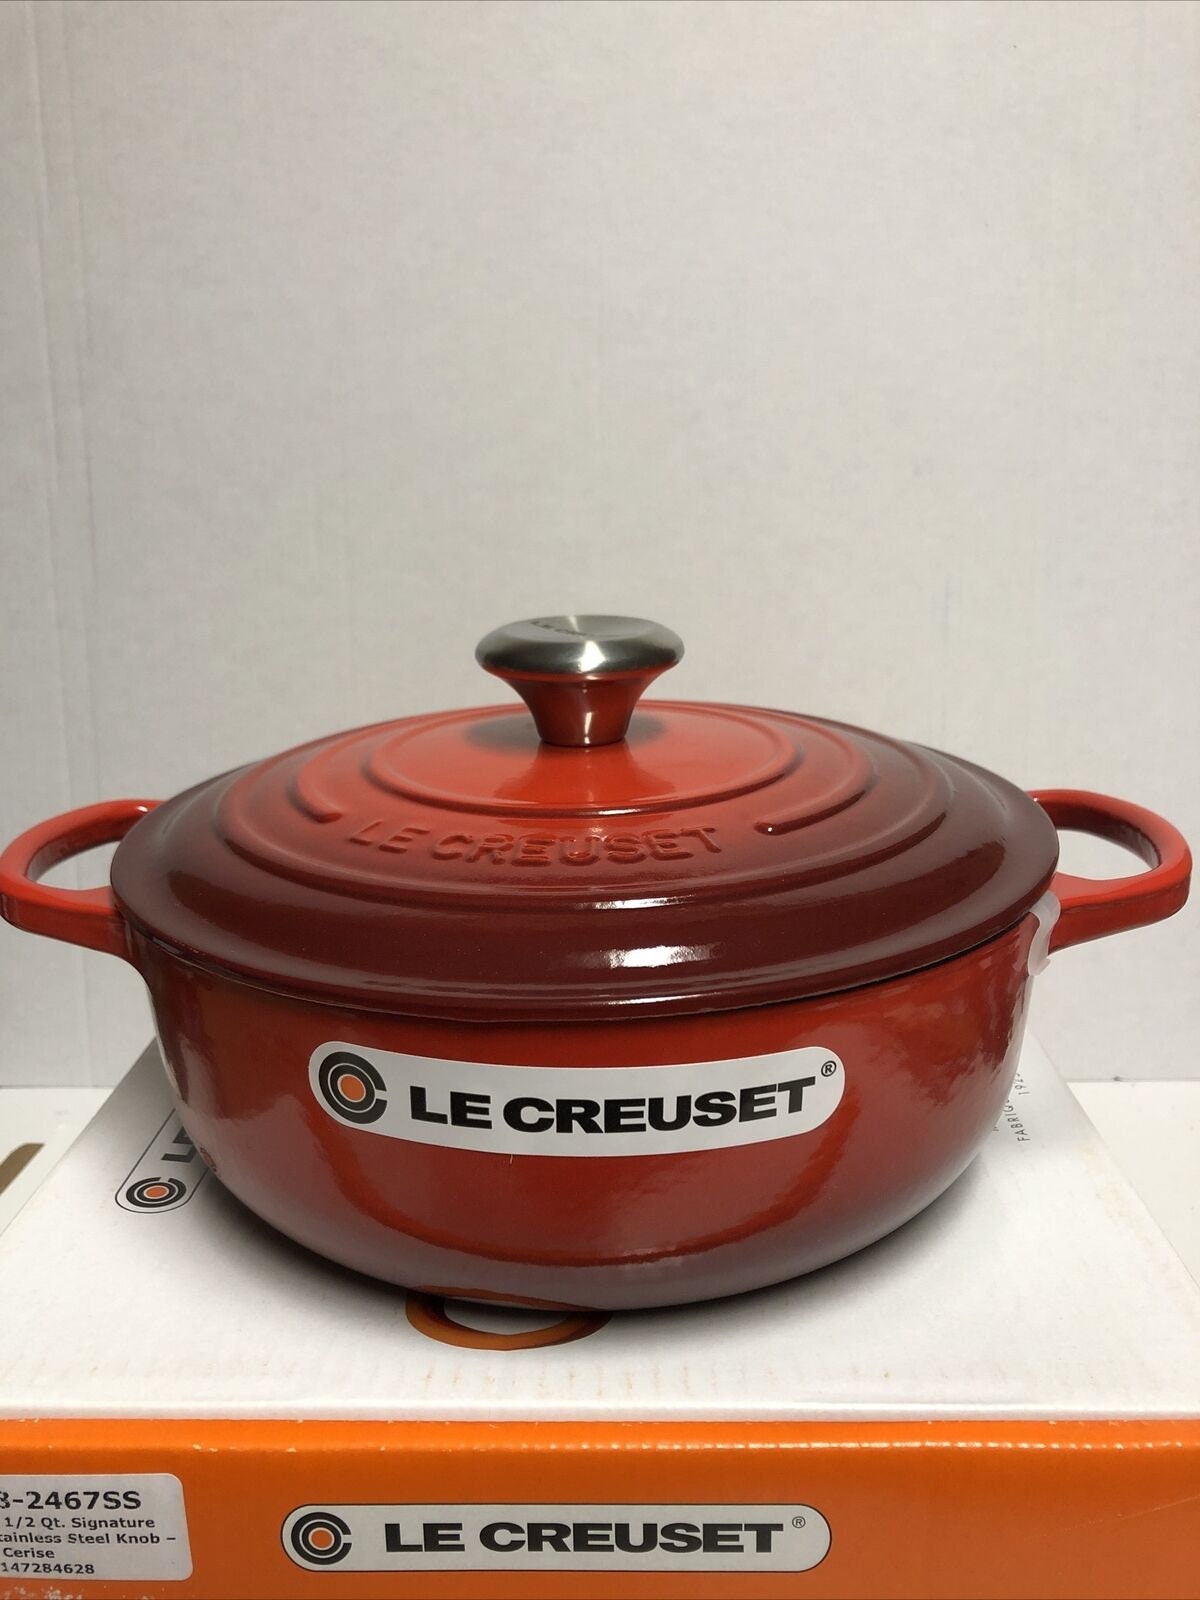 Le Creuset Signature 4.5-Quart Cast Iron Round Dutch Oven - Cerise